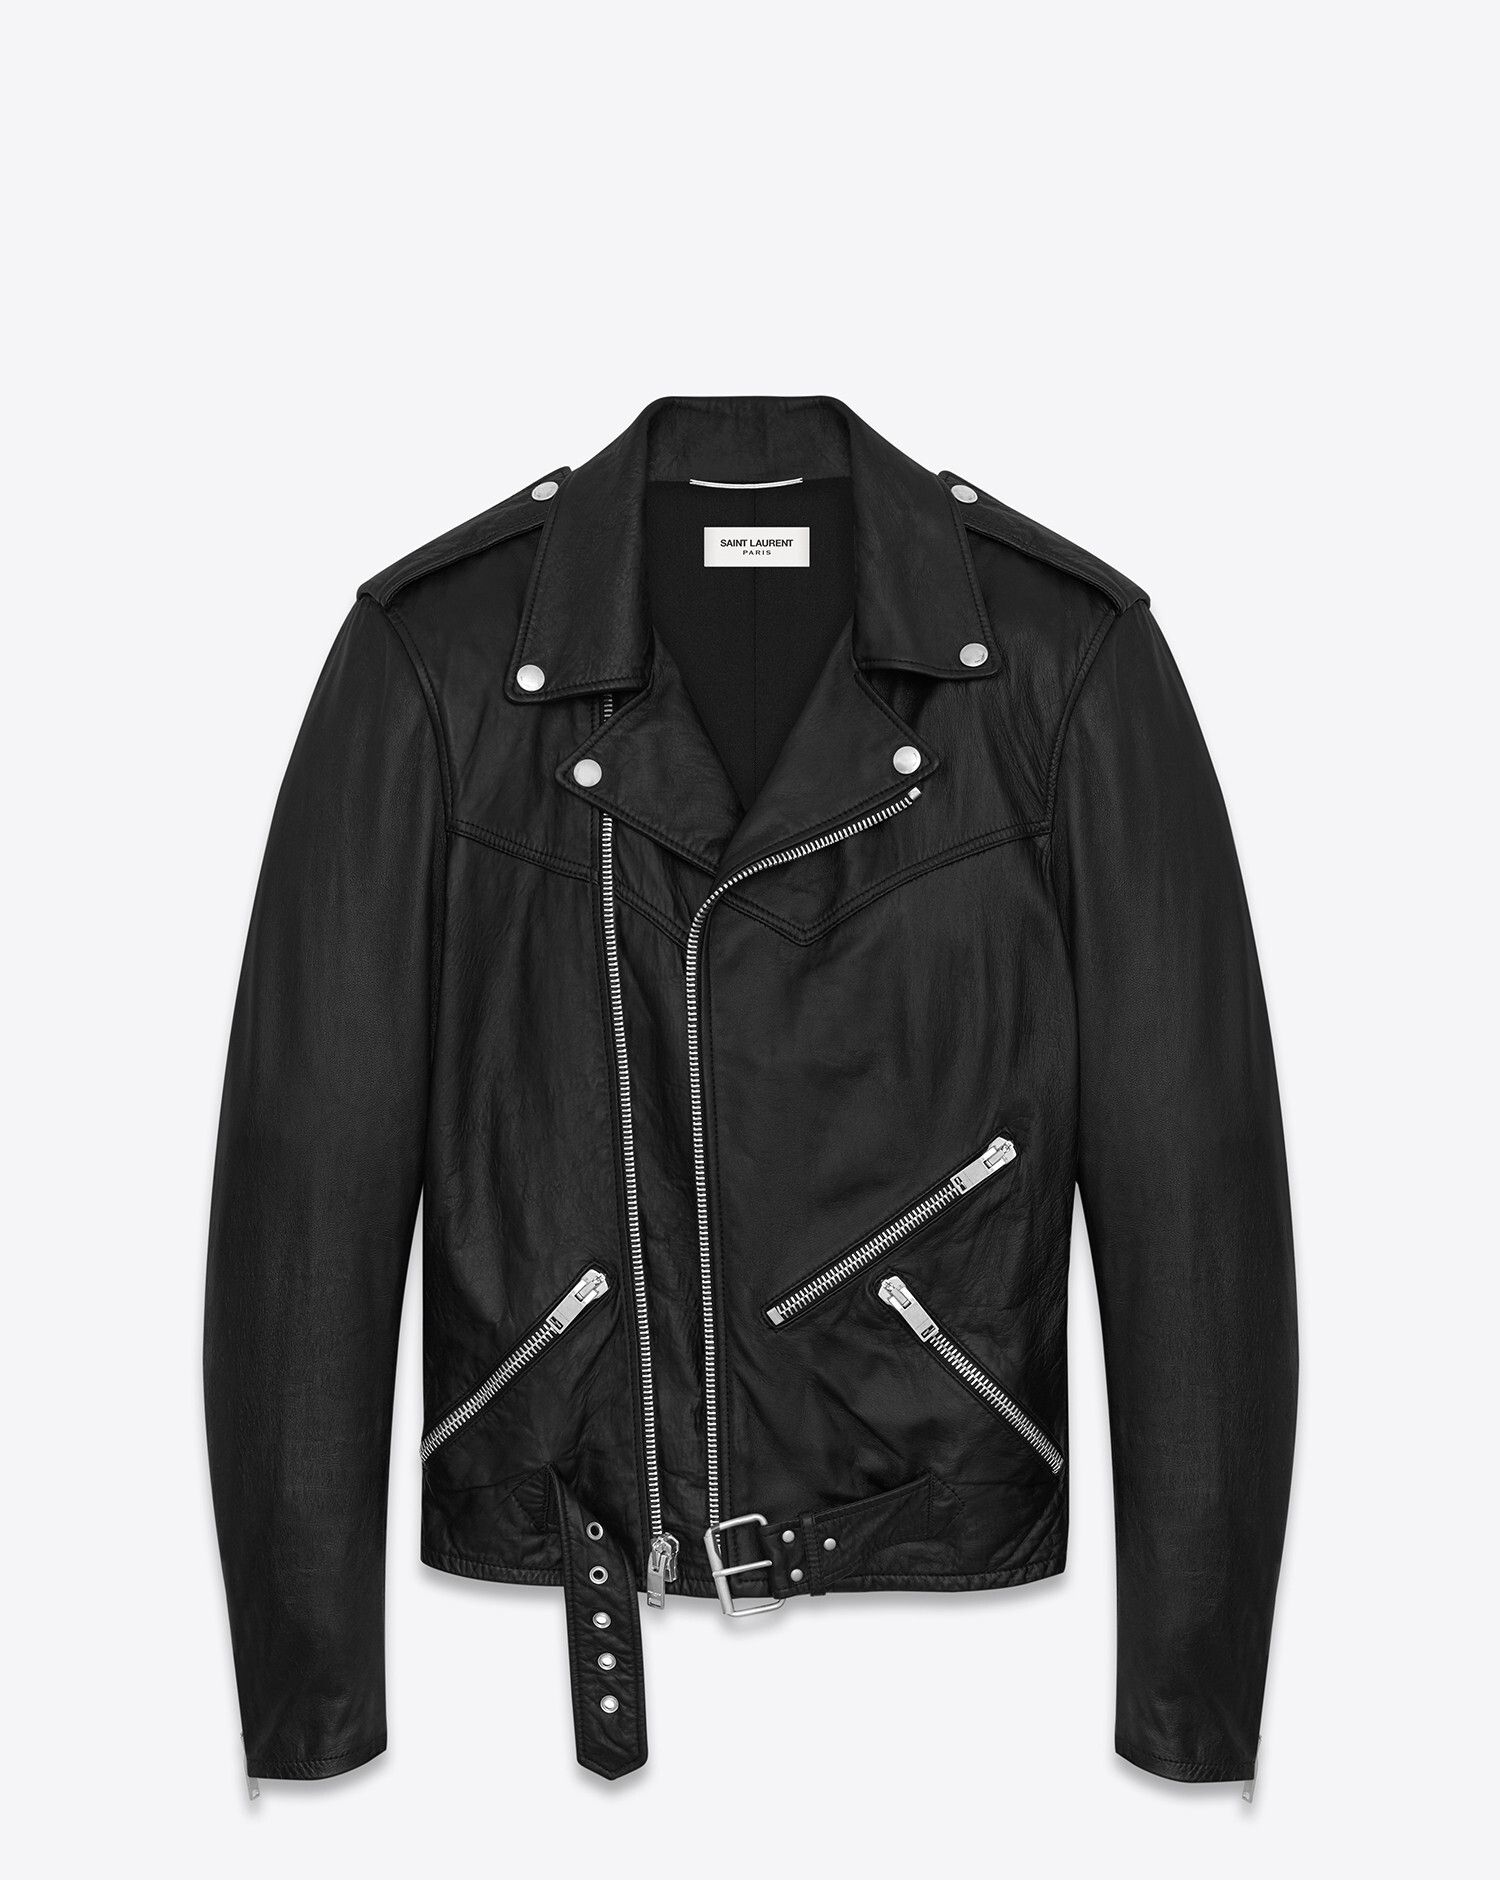 Saint Laurent Paris $5700 Saint Laurent Leather Jacket Hedi Slimane ...